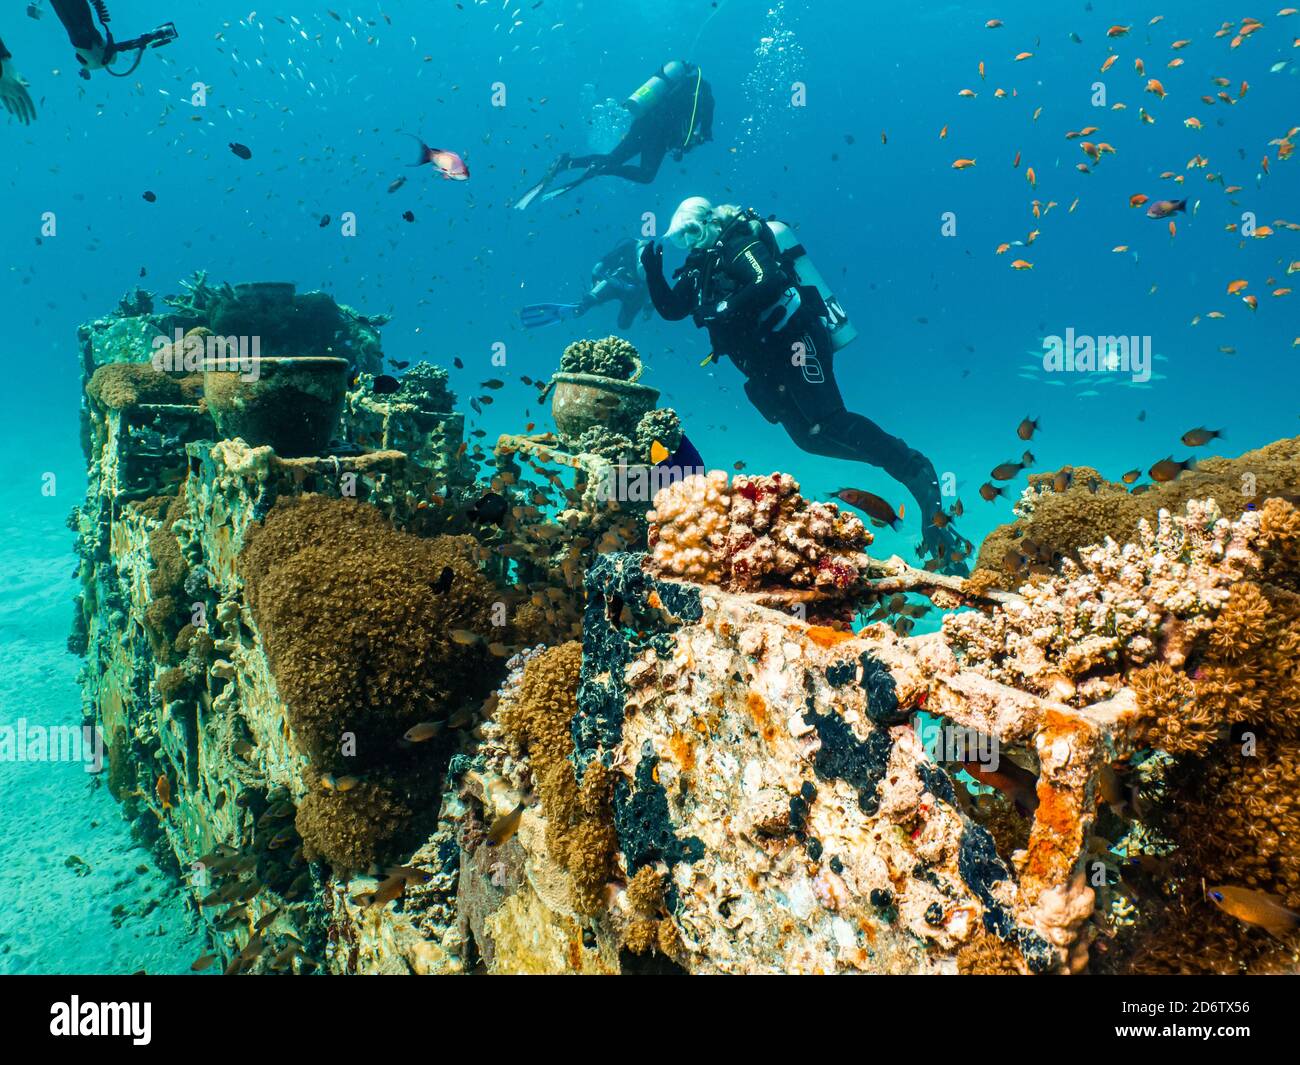 Una barriera corallina artificiale brulicante di pesci. Foto di una barriera corallina del Mar Rosso, Egitto Foto Stock